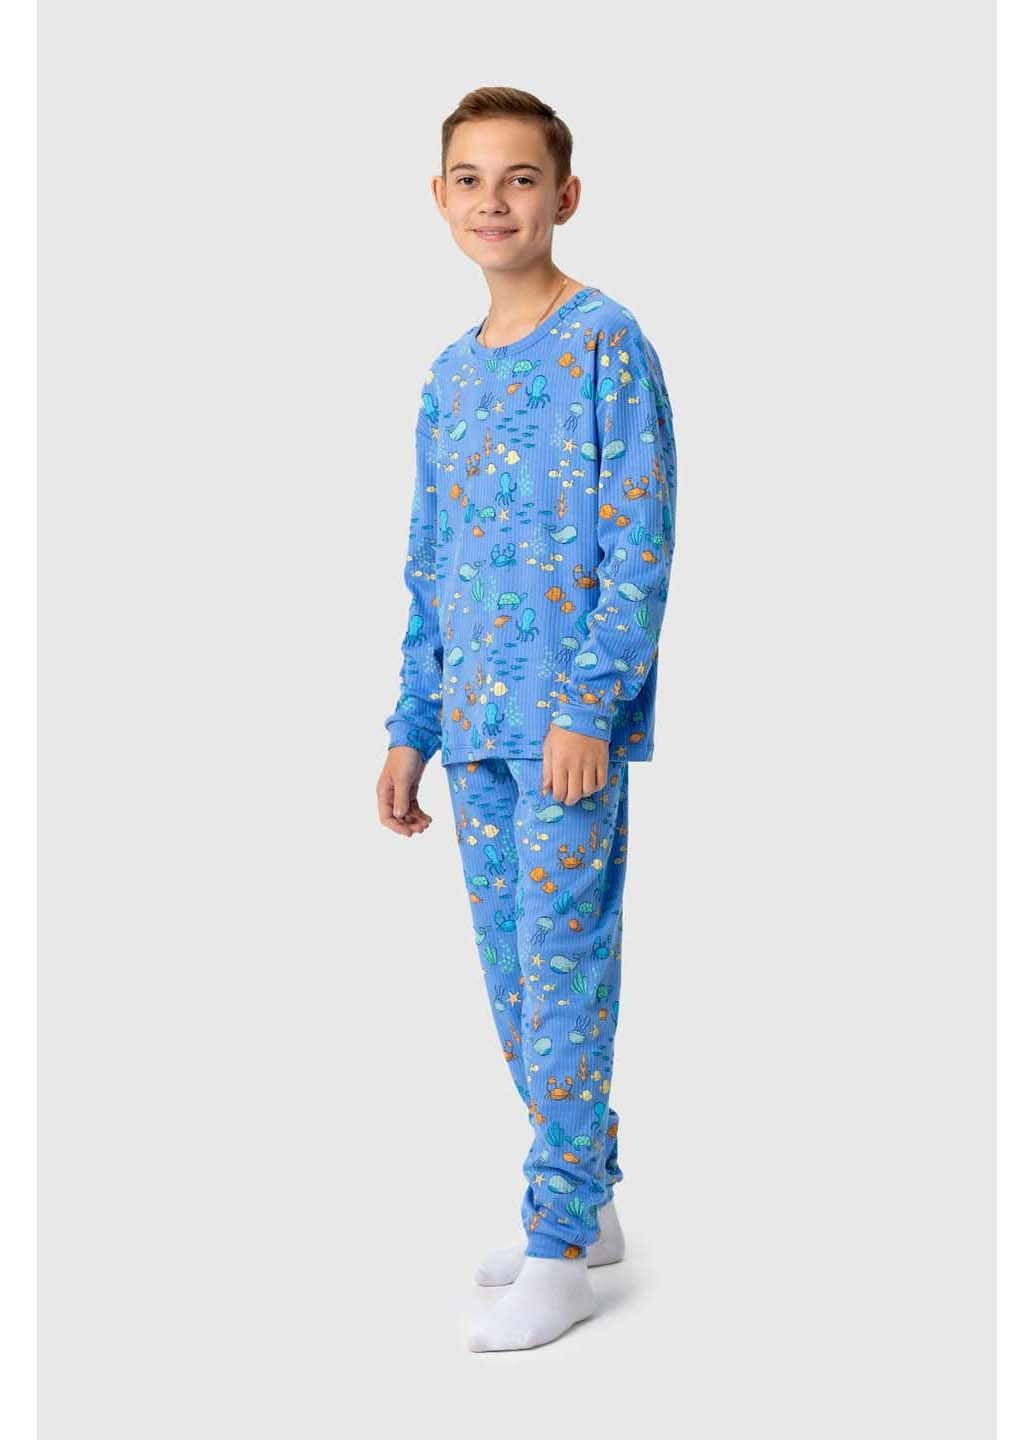 Синяя всесезон пижама Isobel Kids